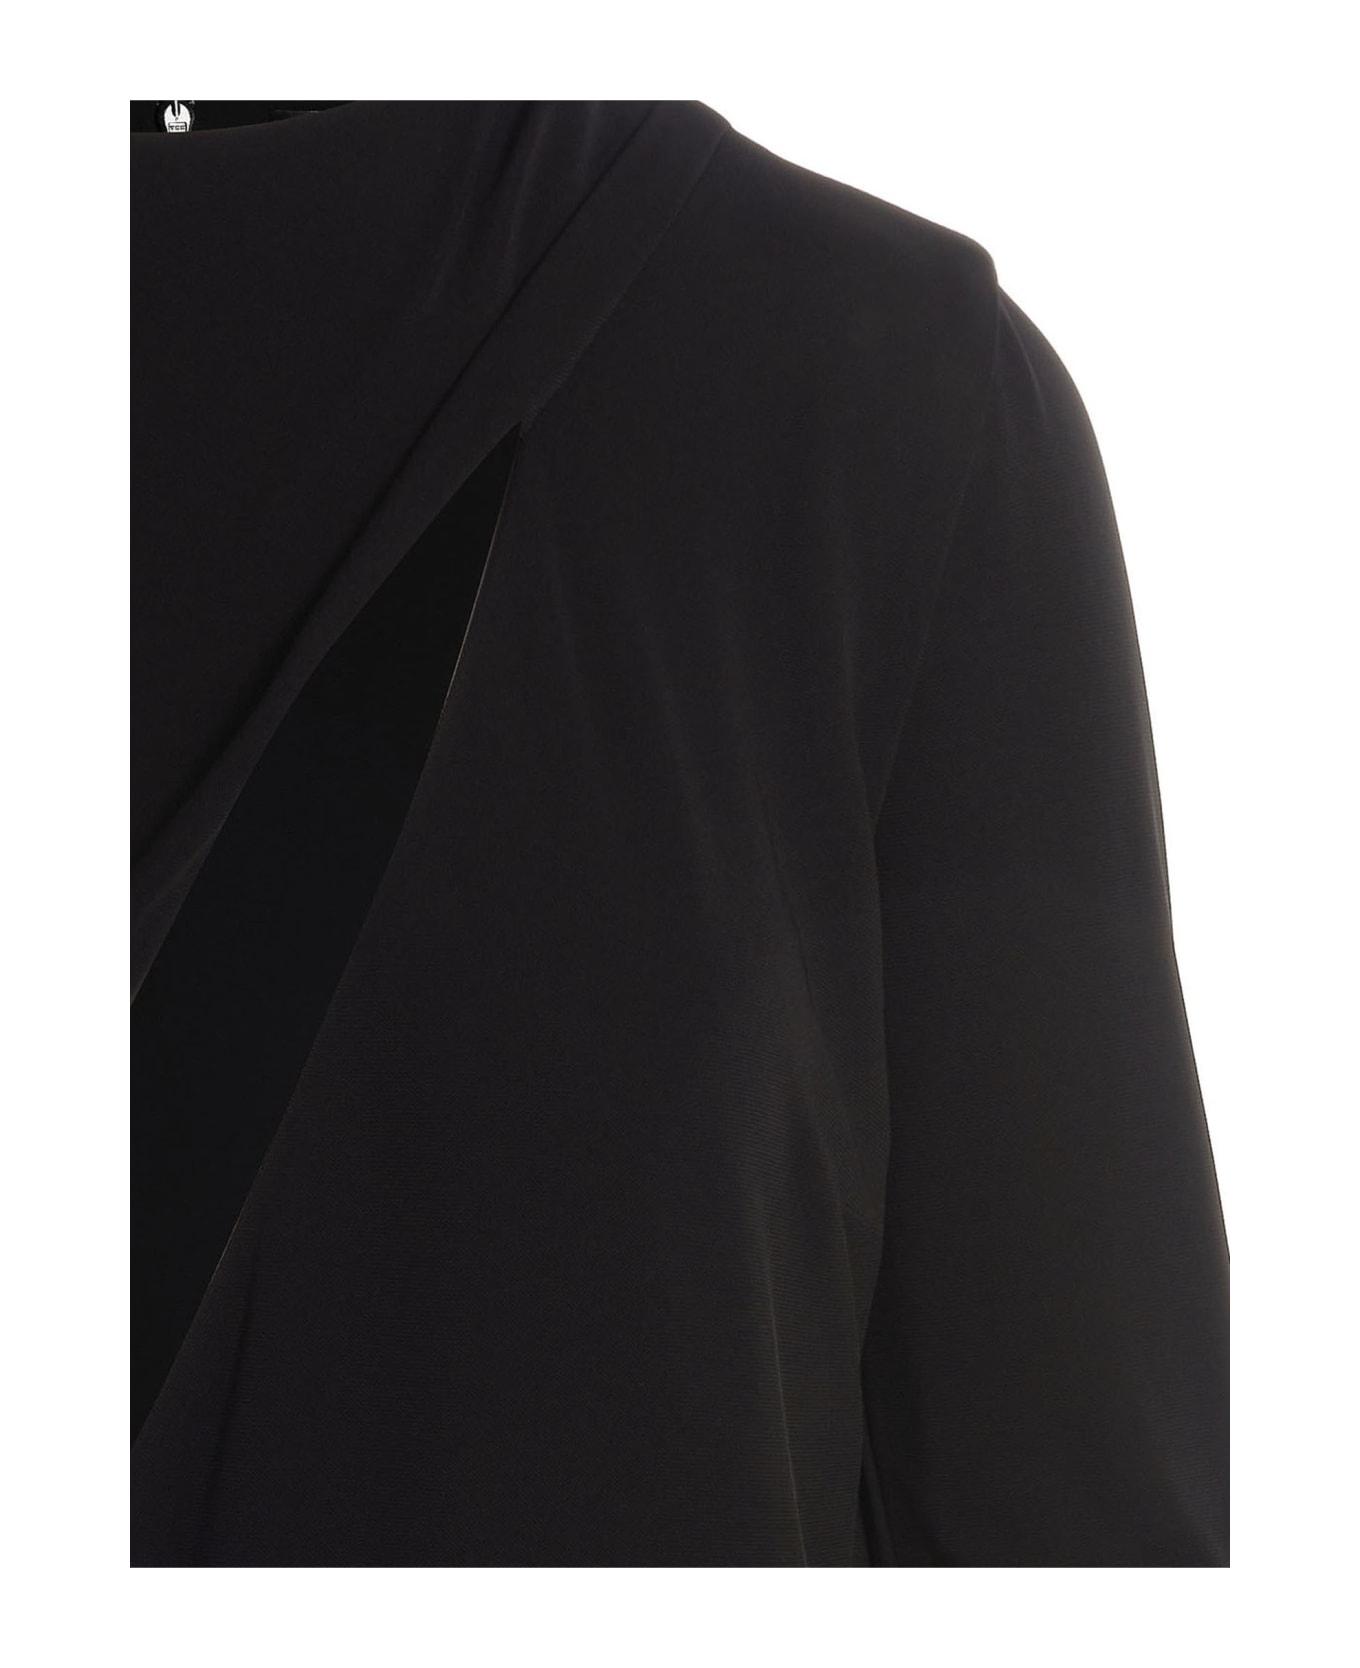 Versace Cut Out Jersey Dress - Black  